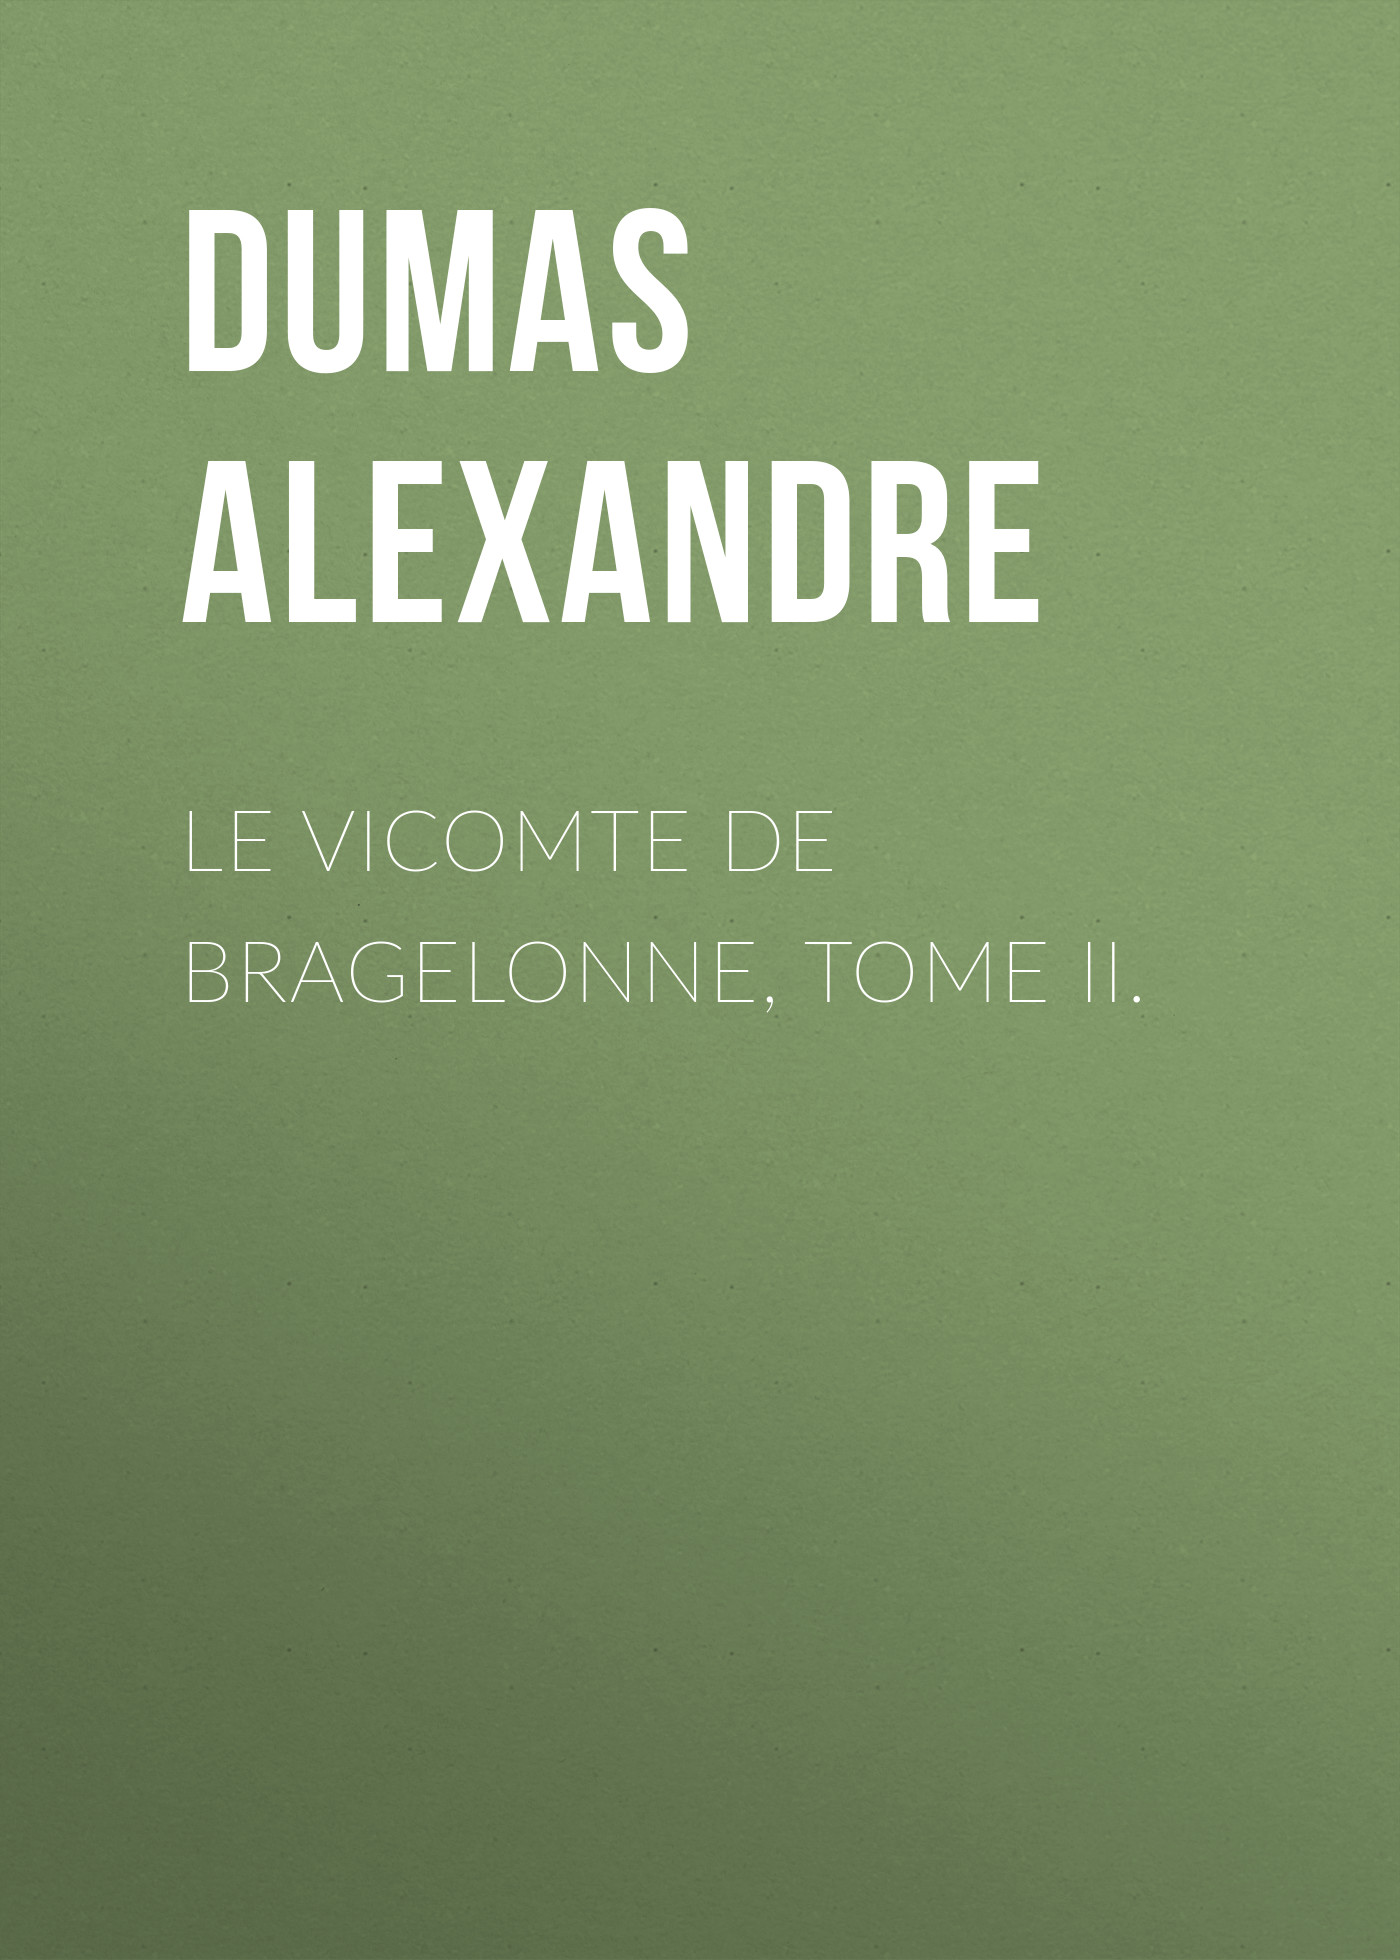 Книга Le vicomte de Bragelonne, Tome II. из серии , созданная Alexandre Dumas, может относится к жанру Литература 19 века, Зарубежная старинная литература, Зарубежная классика. Стоимость электронной книги Le vicomte de Bragelonne, Tome II. с идентификатором 25201815 составляет 0 руб.